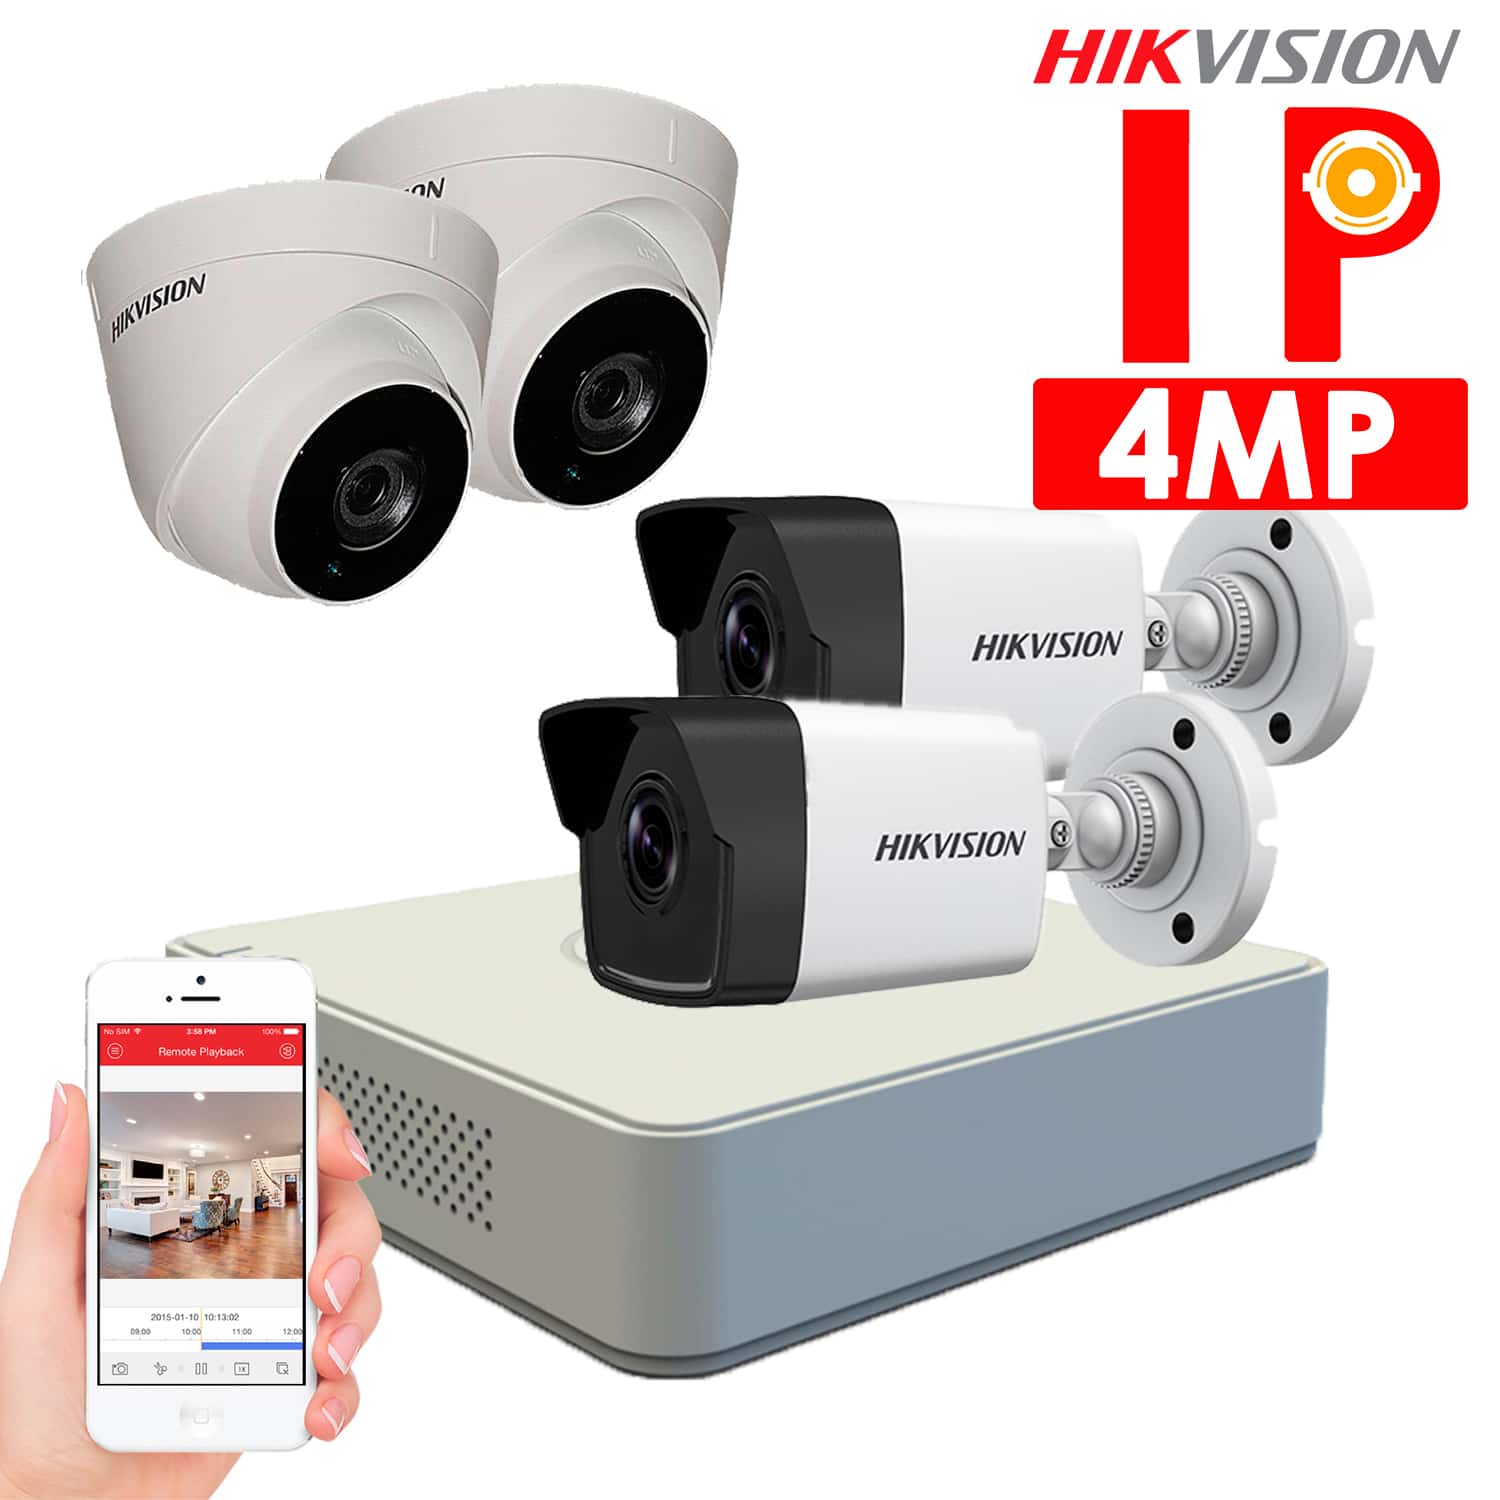 Cámaras de seguridad IP Hikvision – 4 cámaras IP 4Mp – Tubo y Domo – HKIPD-042 – Sistemas de Seguridad en Lima Perú – ALFASEGUR